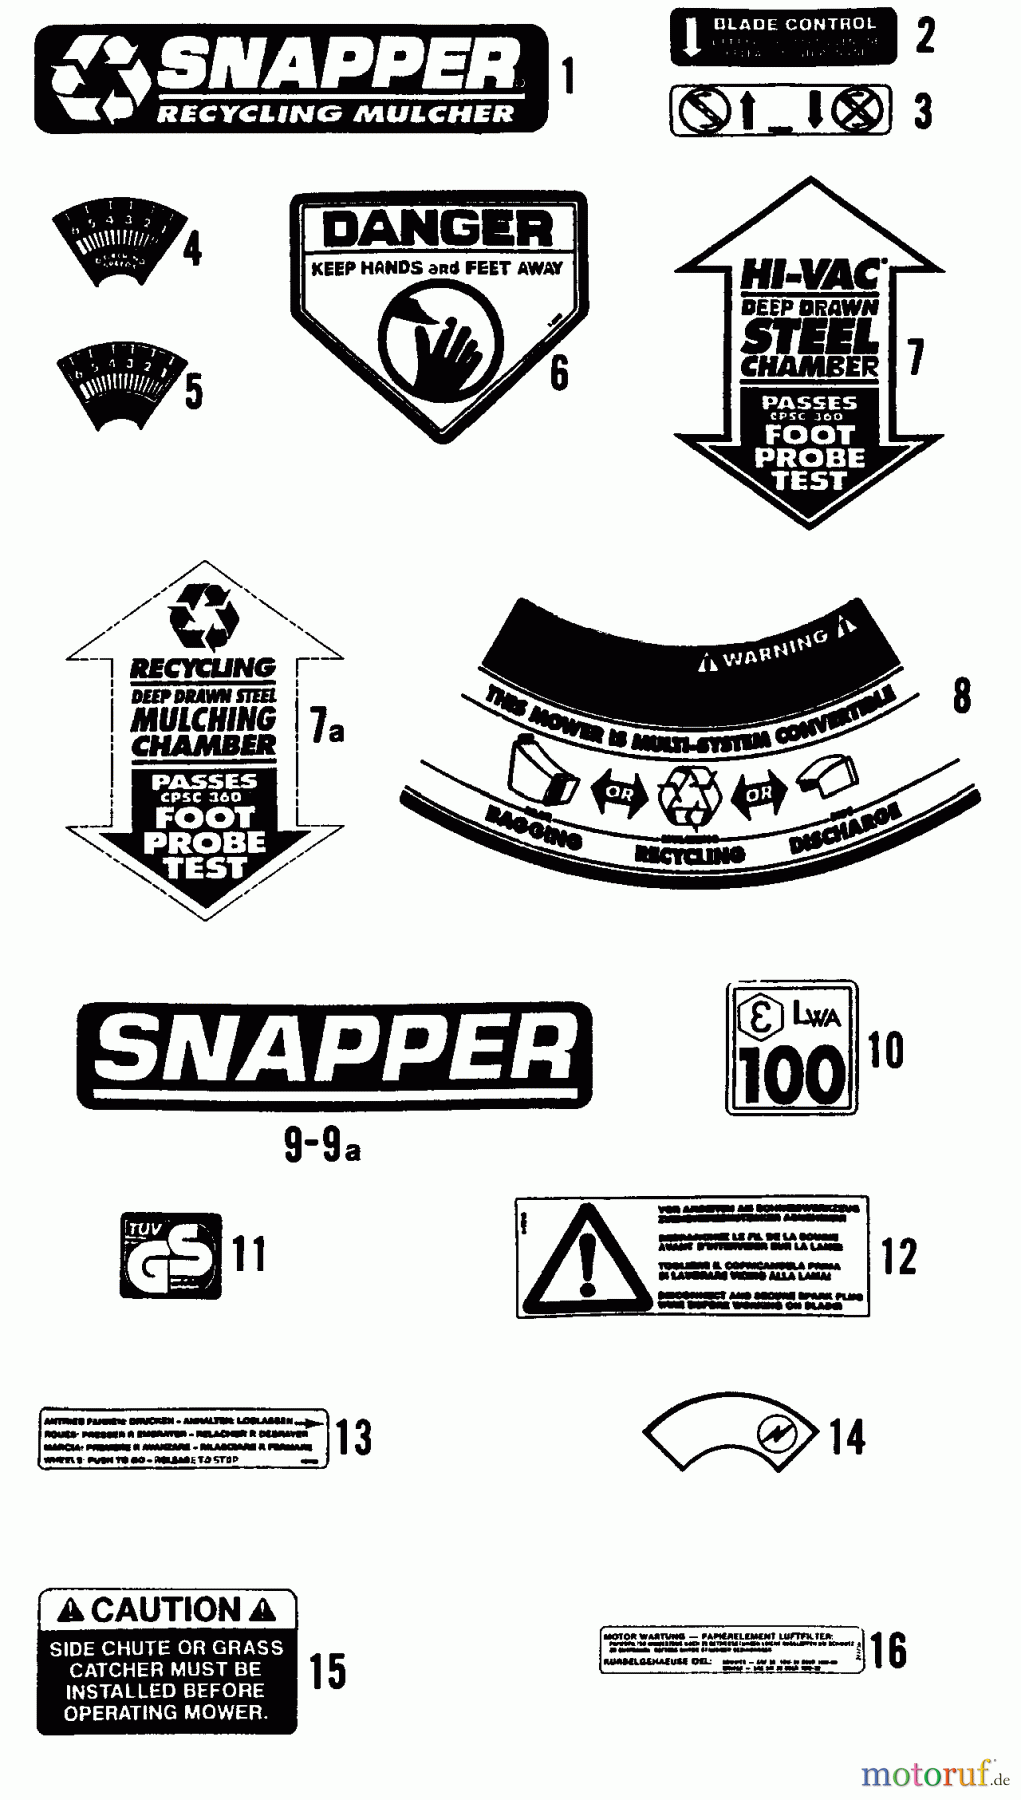  Snapper Rasenmäher P21509T2 - Snapper 21